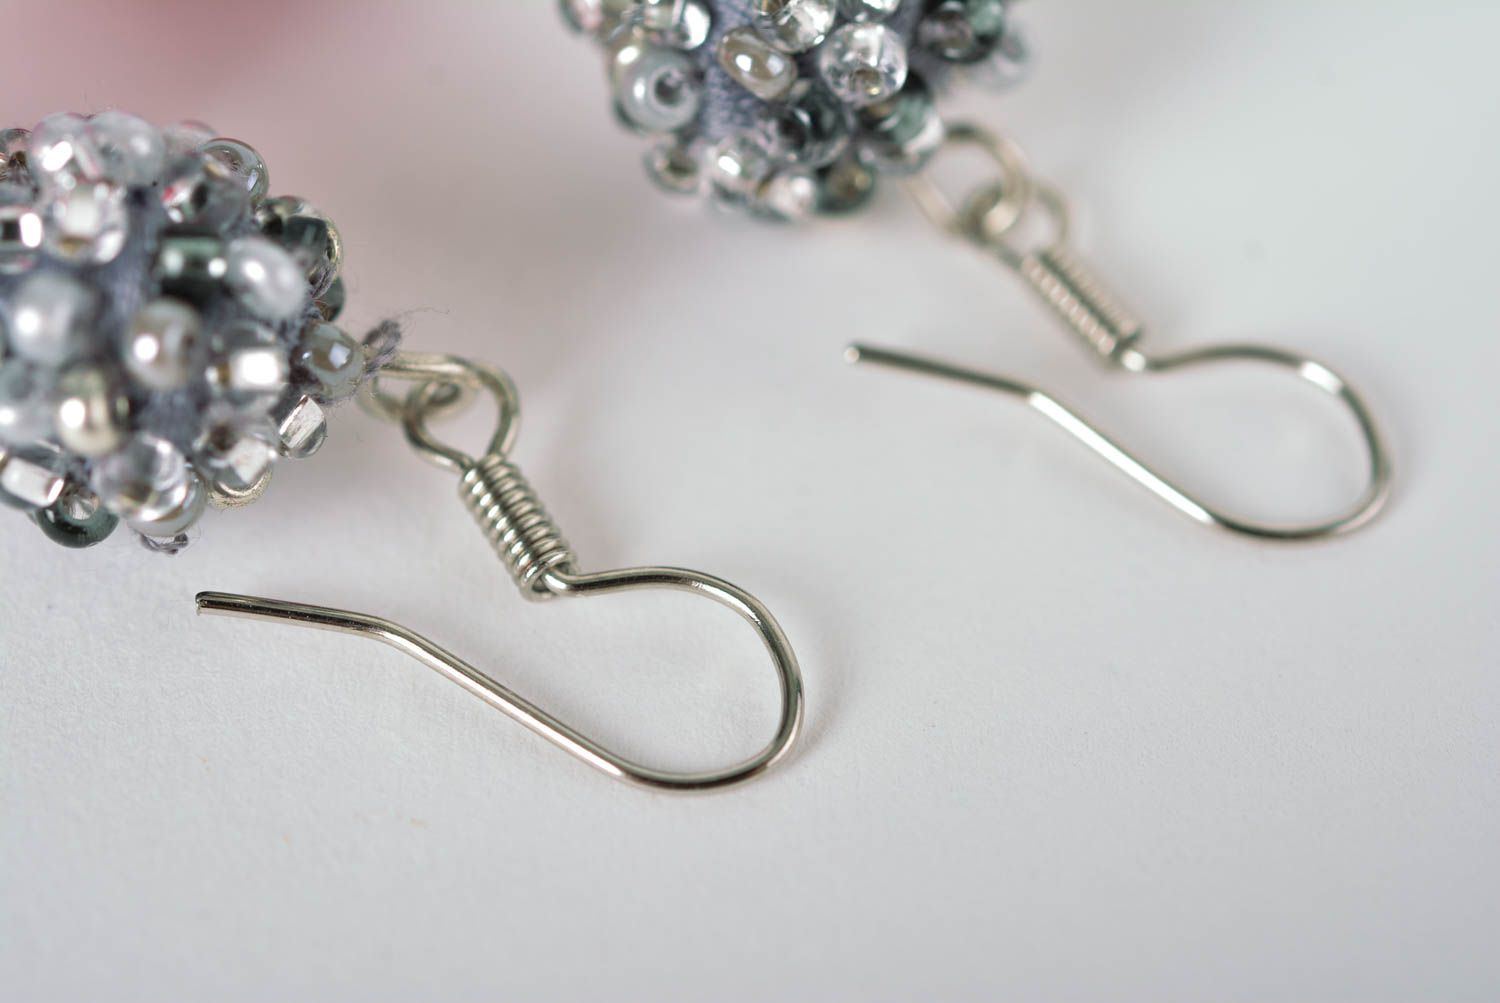 Handmade stylish earrings crimson earrings beaded textile earrings gift for her photo 4